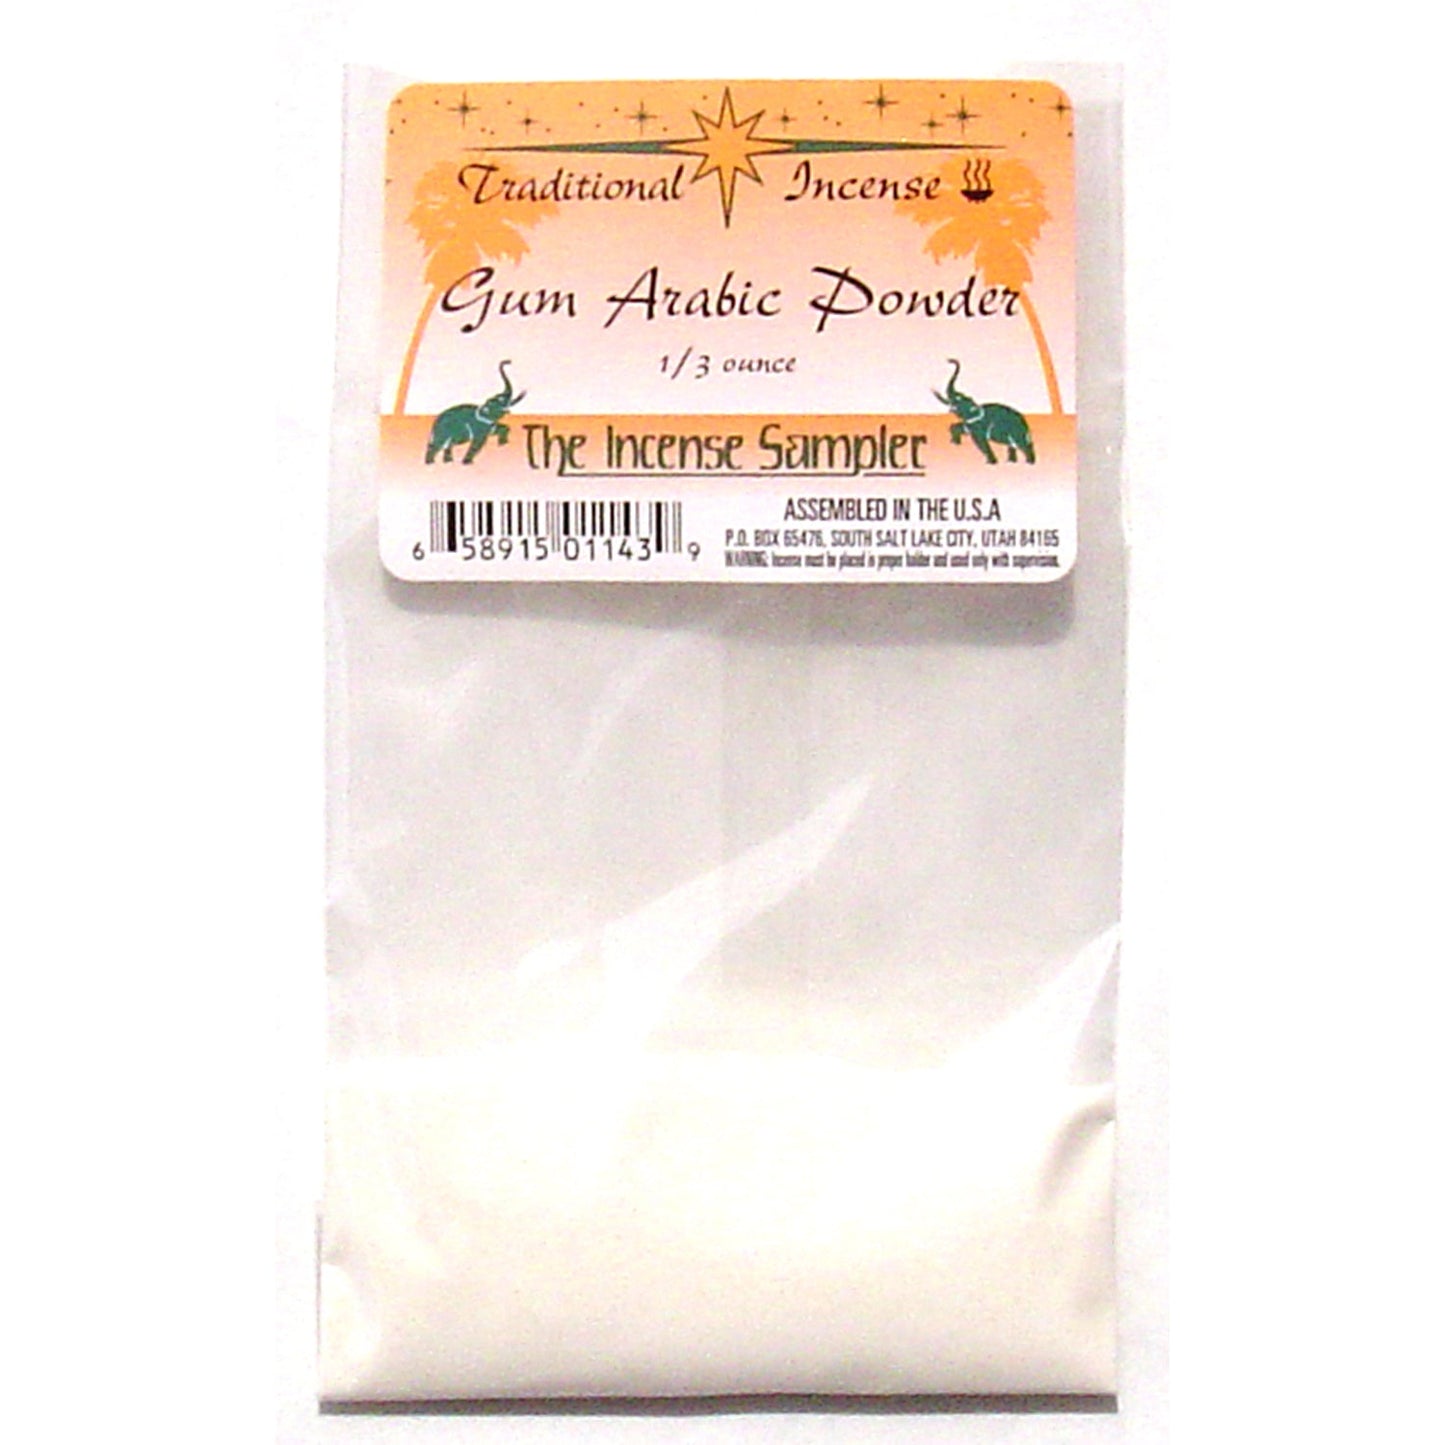 Gum Arabic Powder